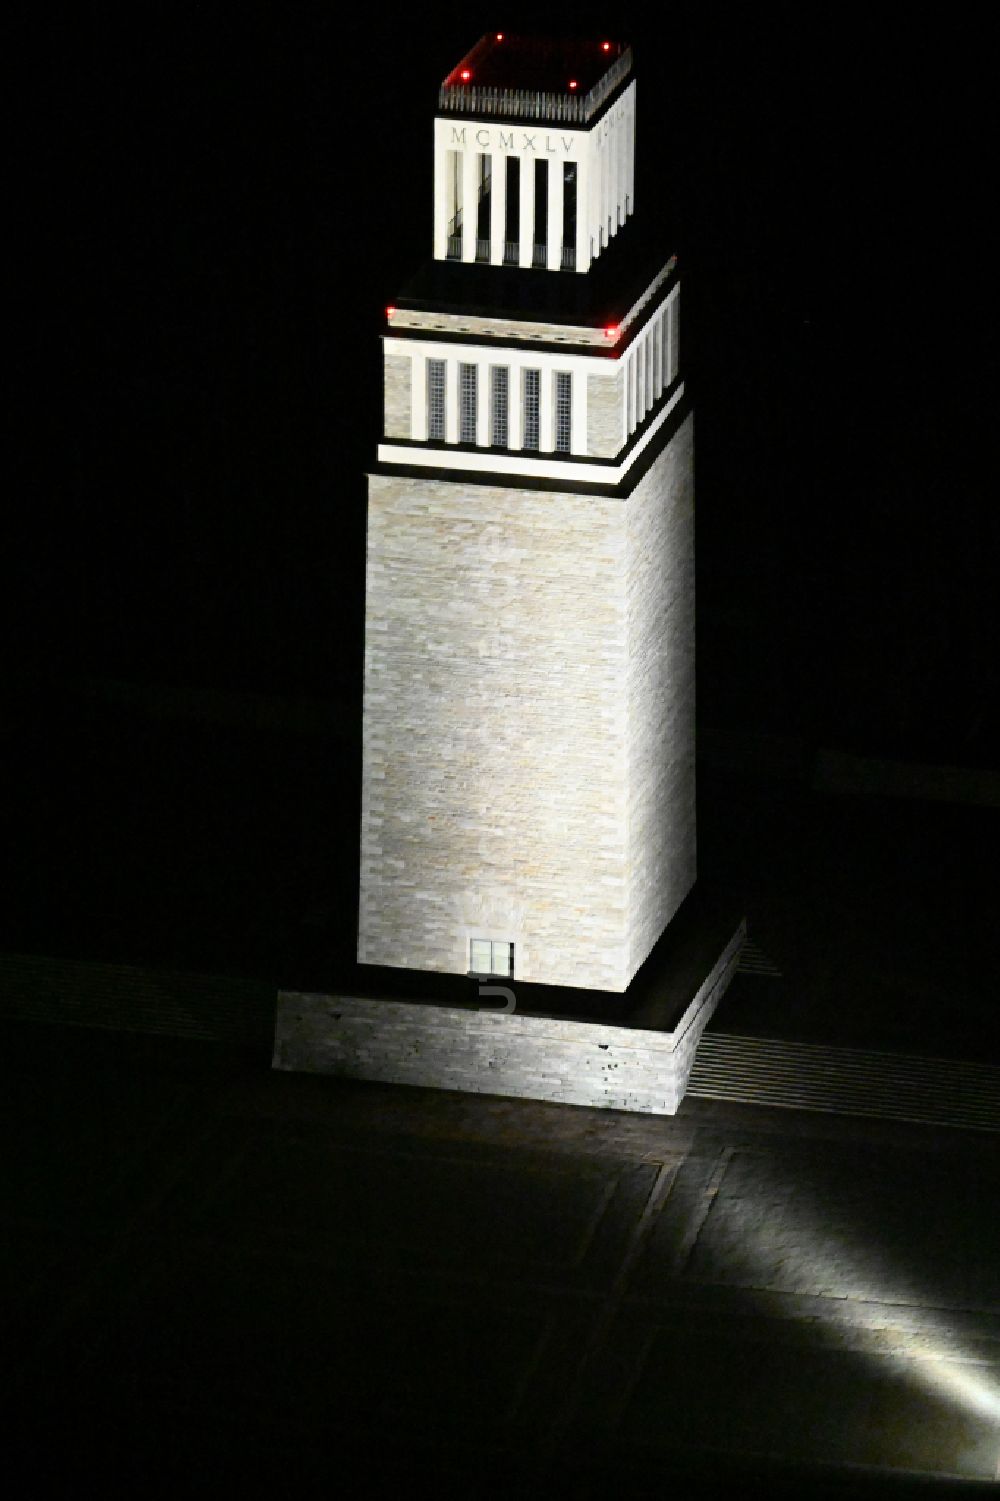 Weimar bei Nacht von oben - Nachtluftbild Glockenturm der Nationalen Mahn- und Gedenkstätte der DDR Buchenwald im Ortsteil Ettersberg in Weimar im Bundesland Thüringen, Deutschland